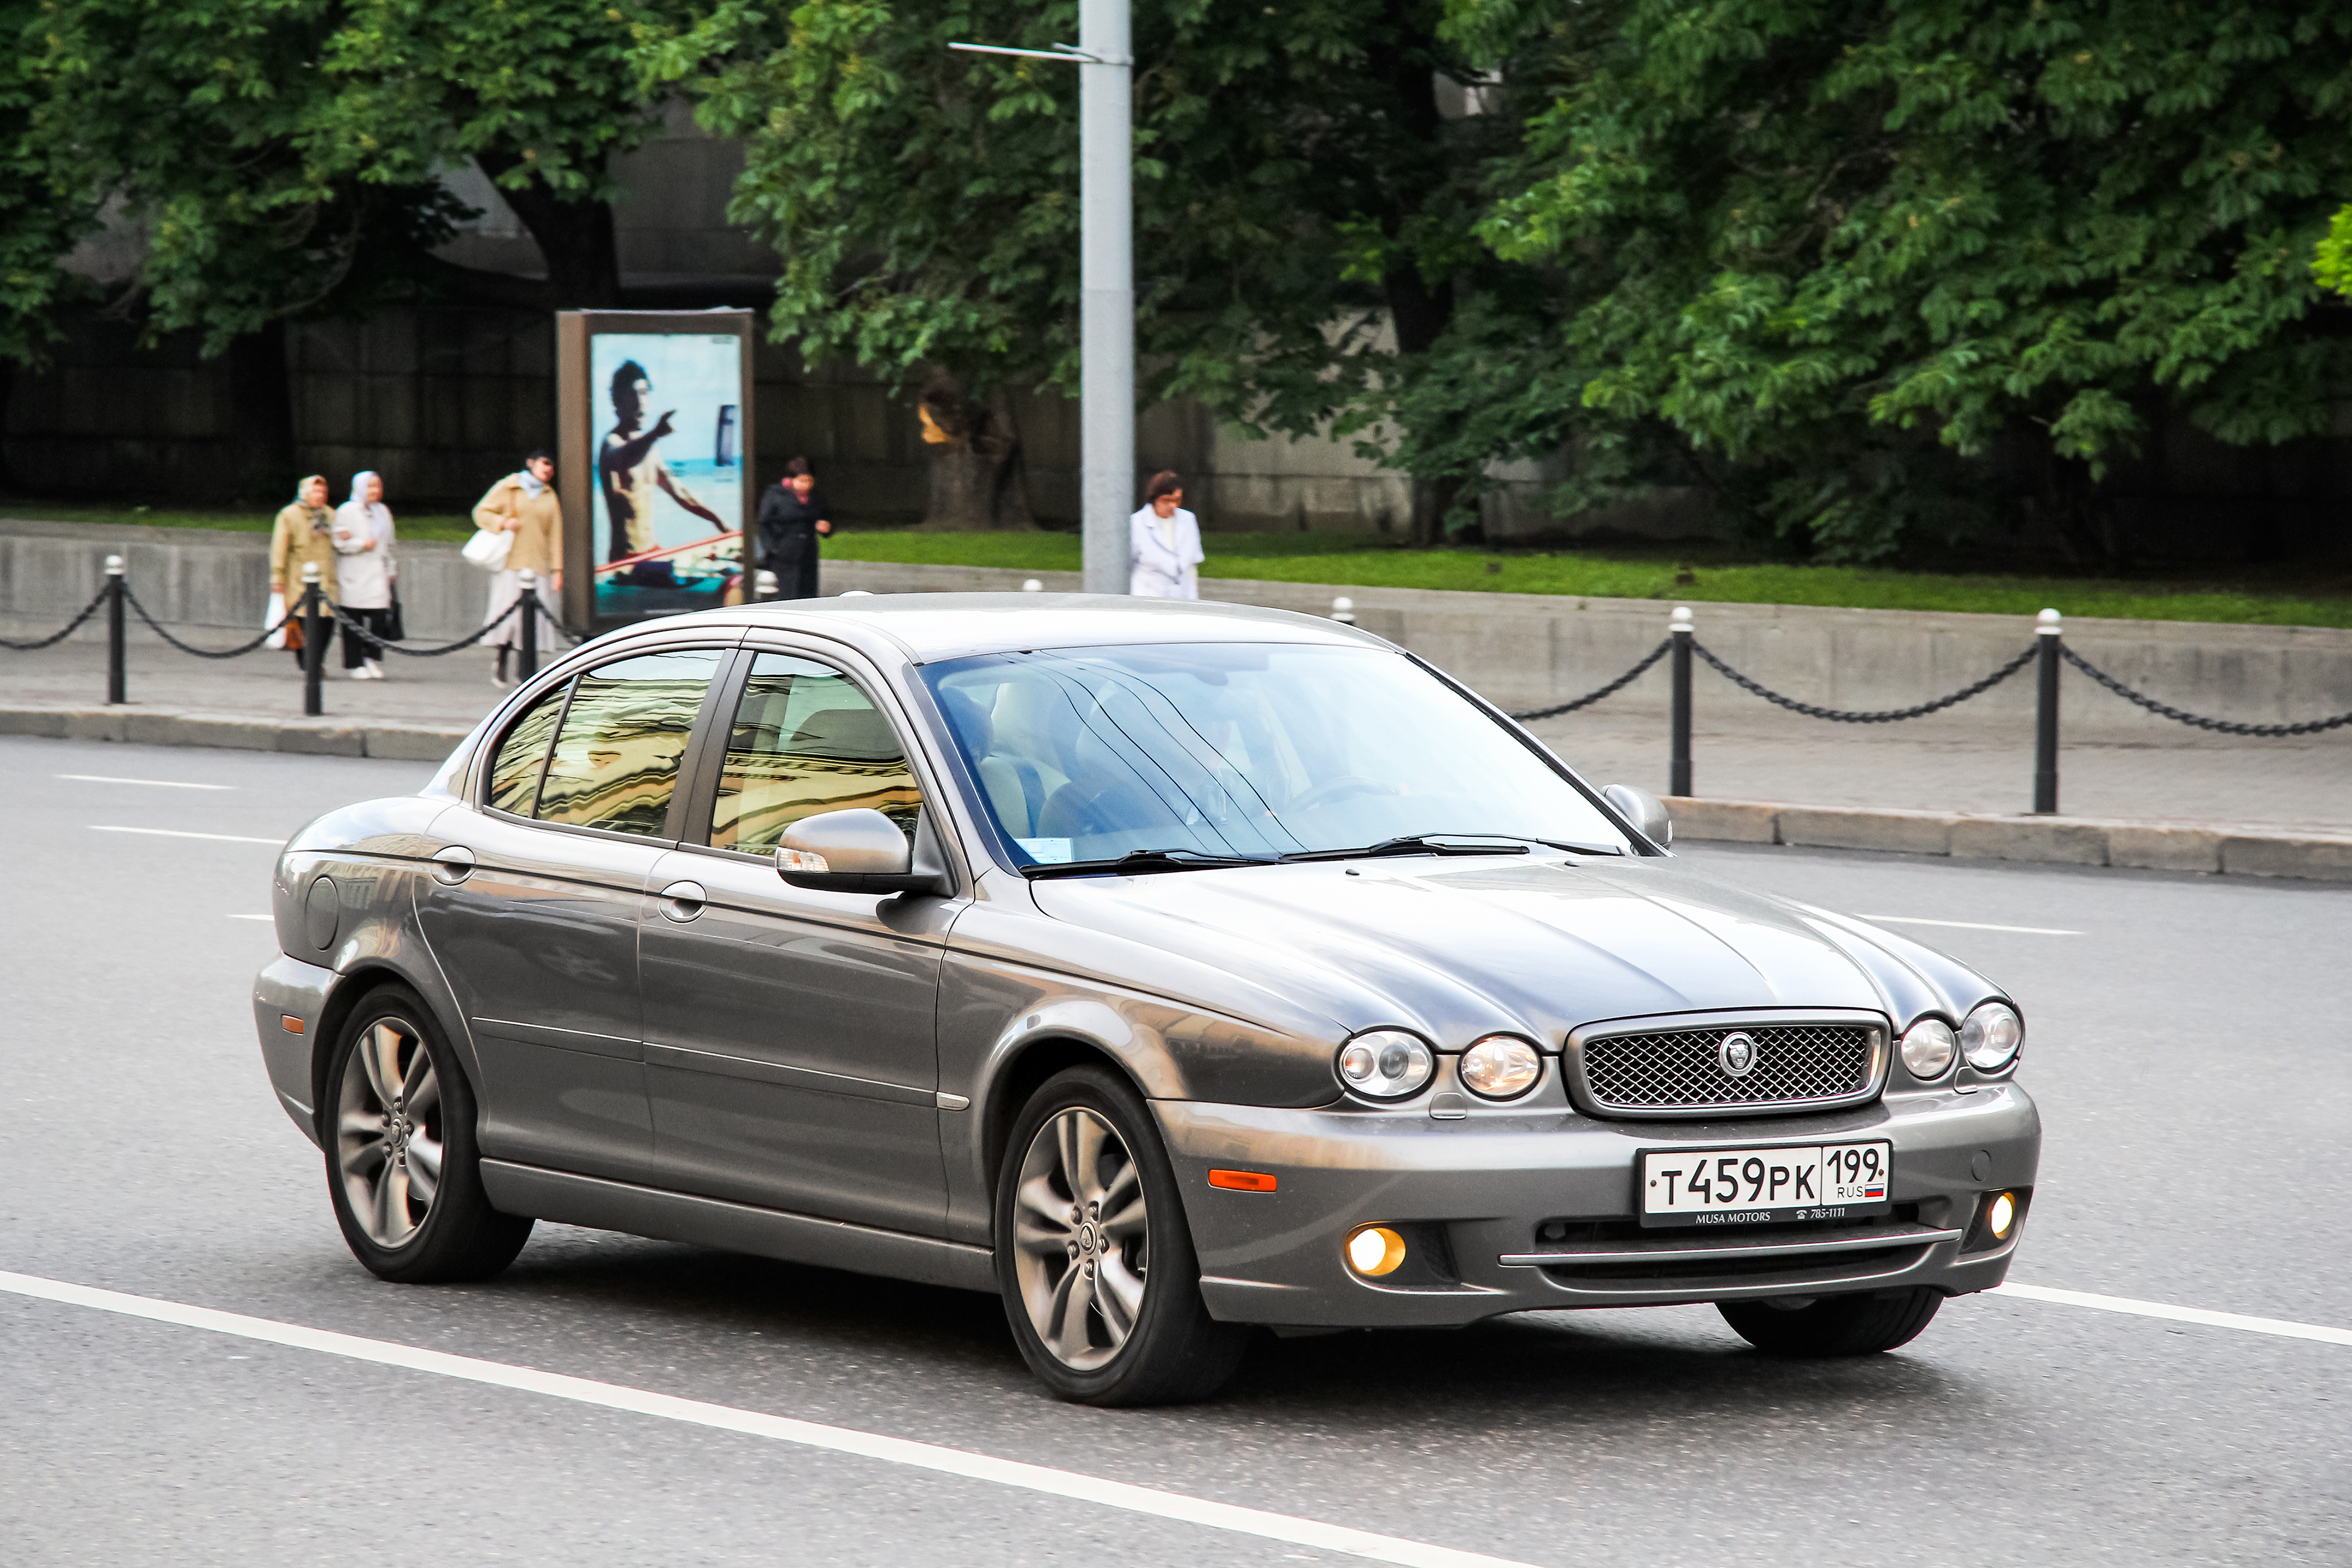 Der Jaguar X-Type ist selten anzutreffen und besteht zu 90 % aus Teilen mit dem Ford Mondeo